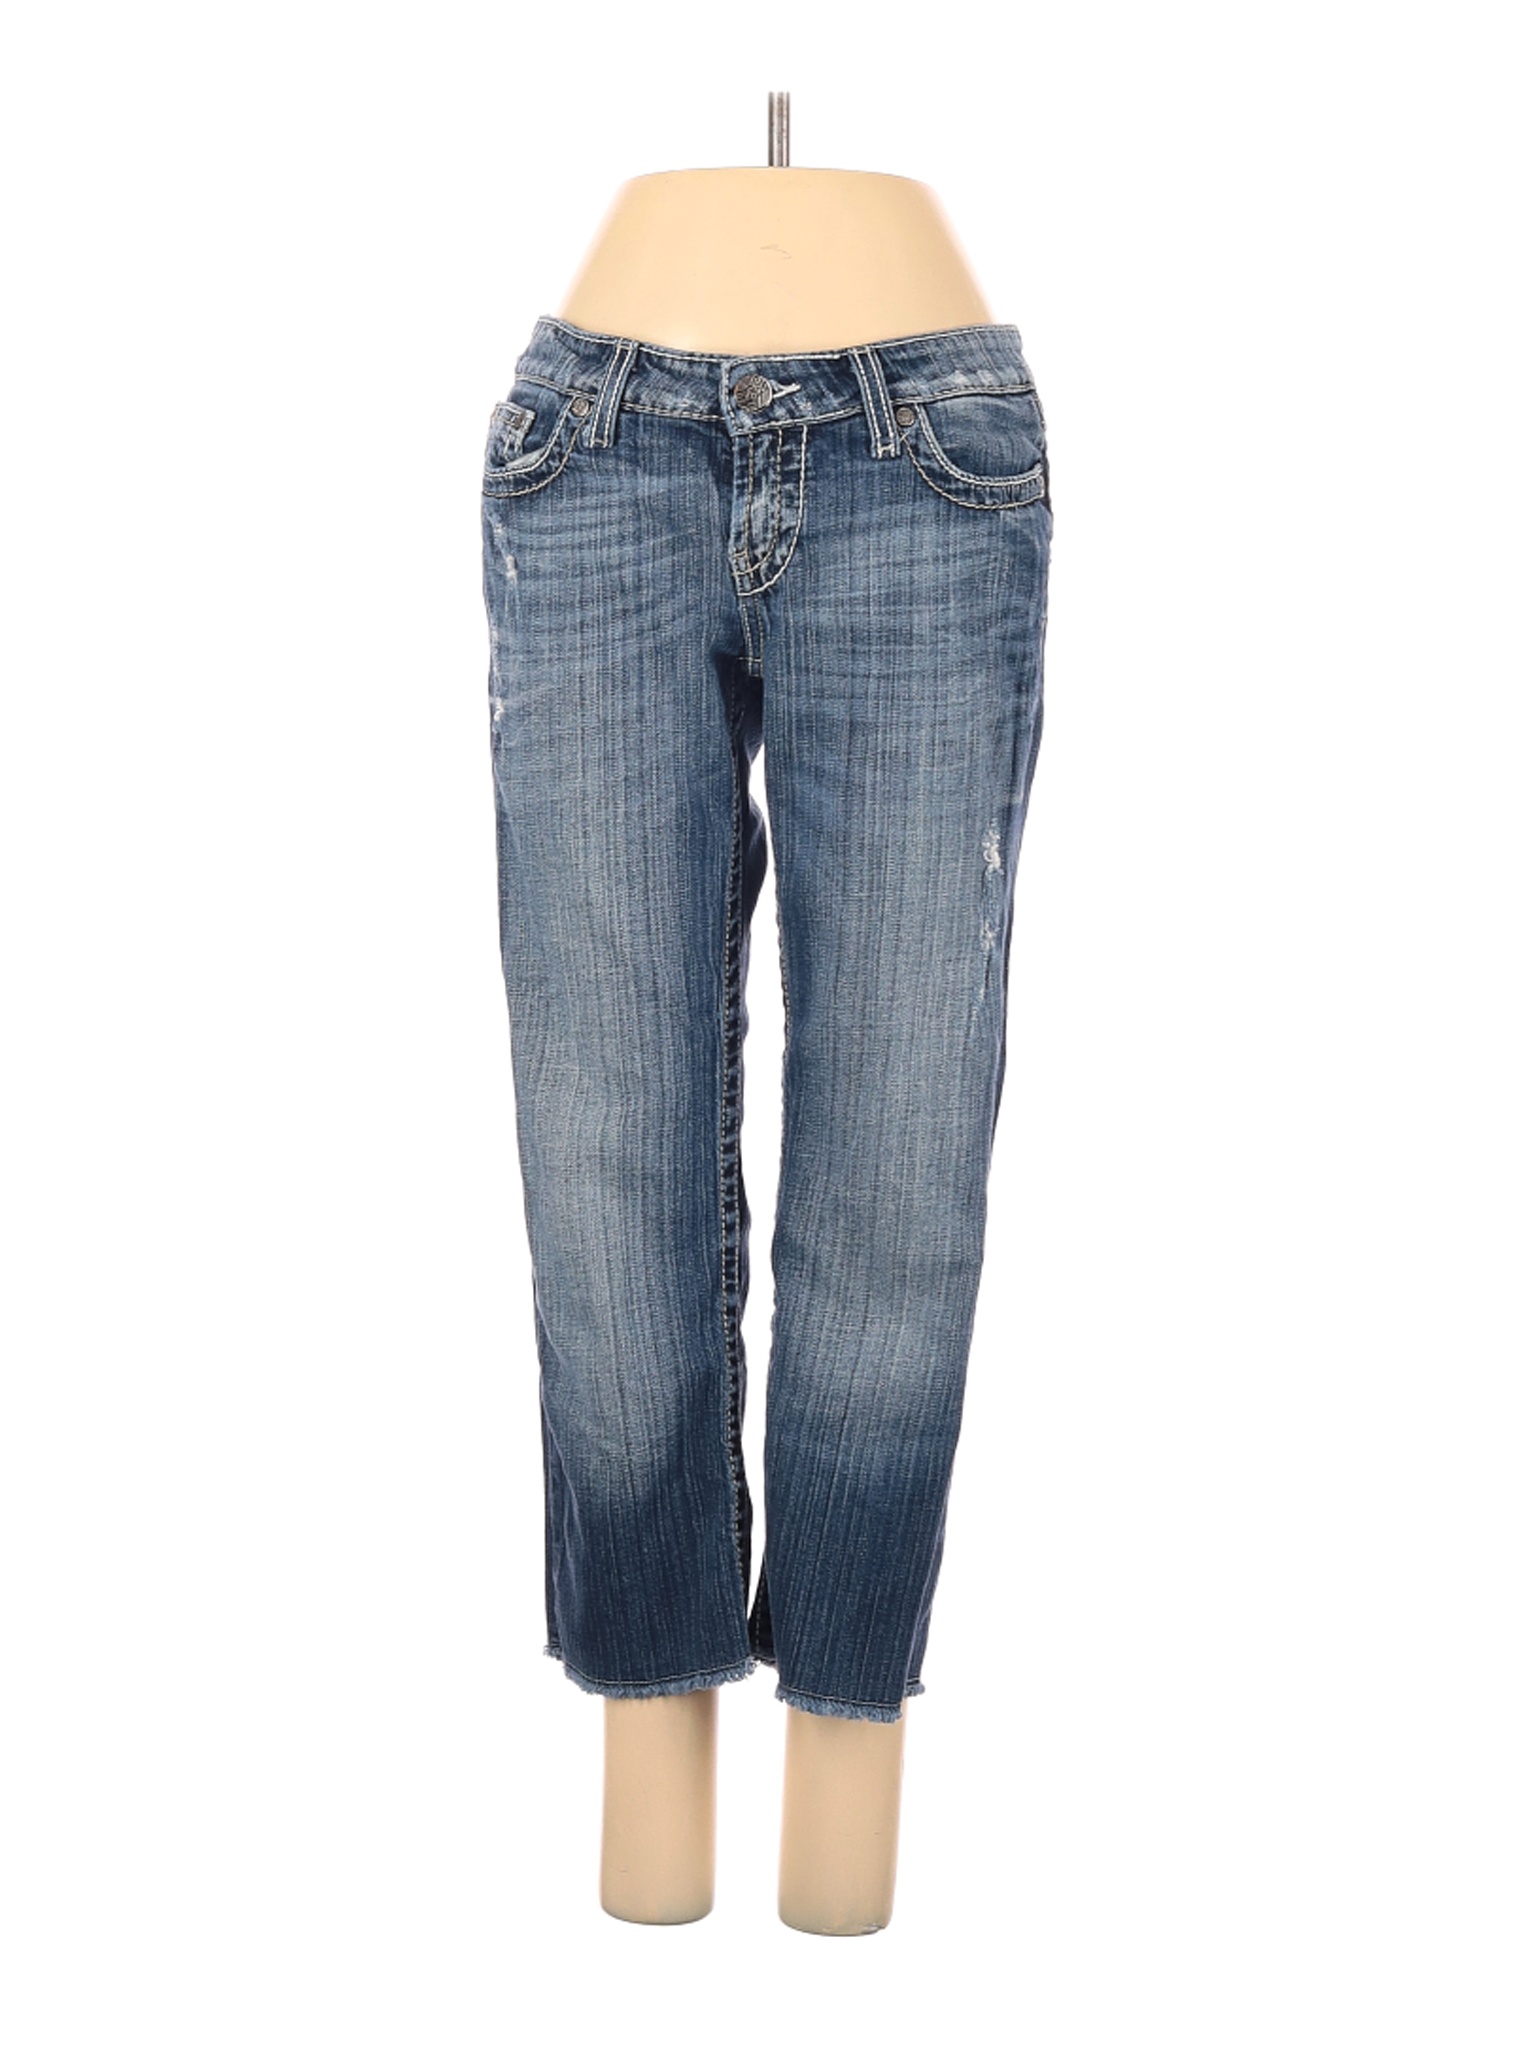 BKE Women Blue Jeans 27W | eBay